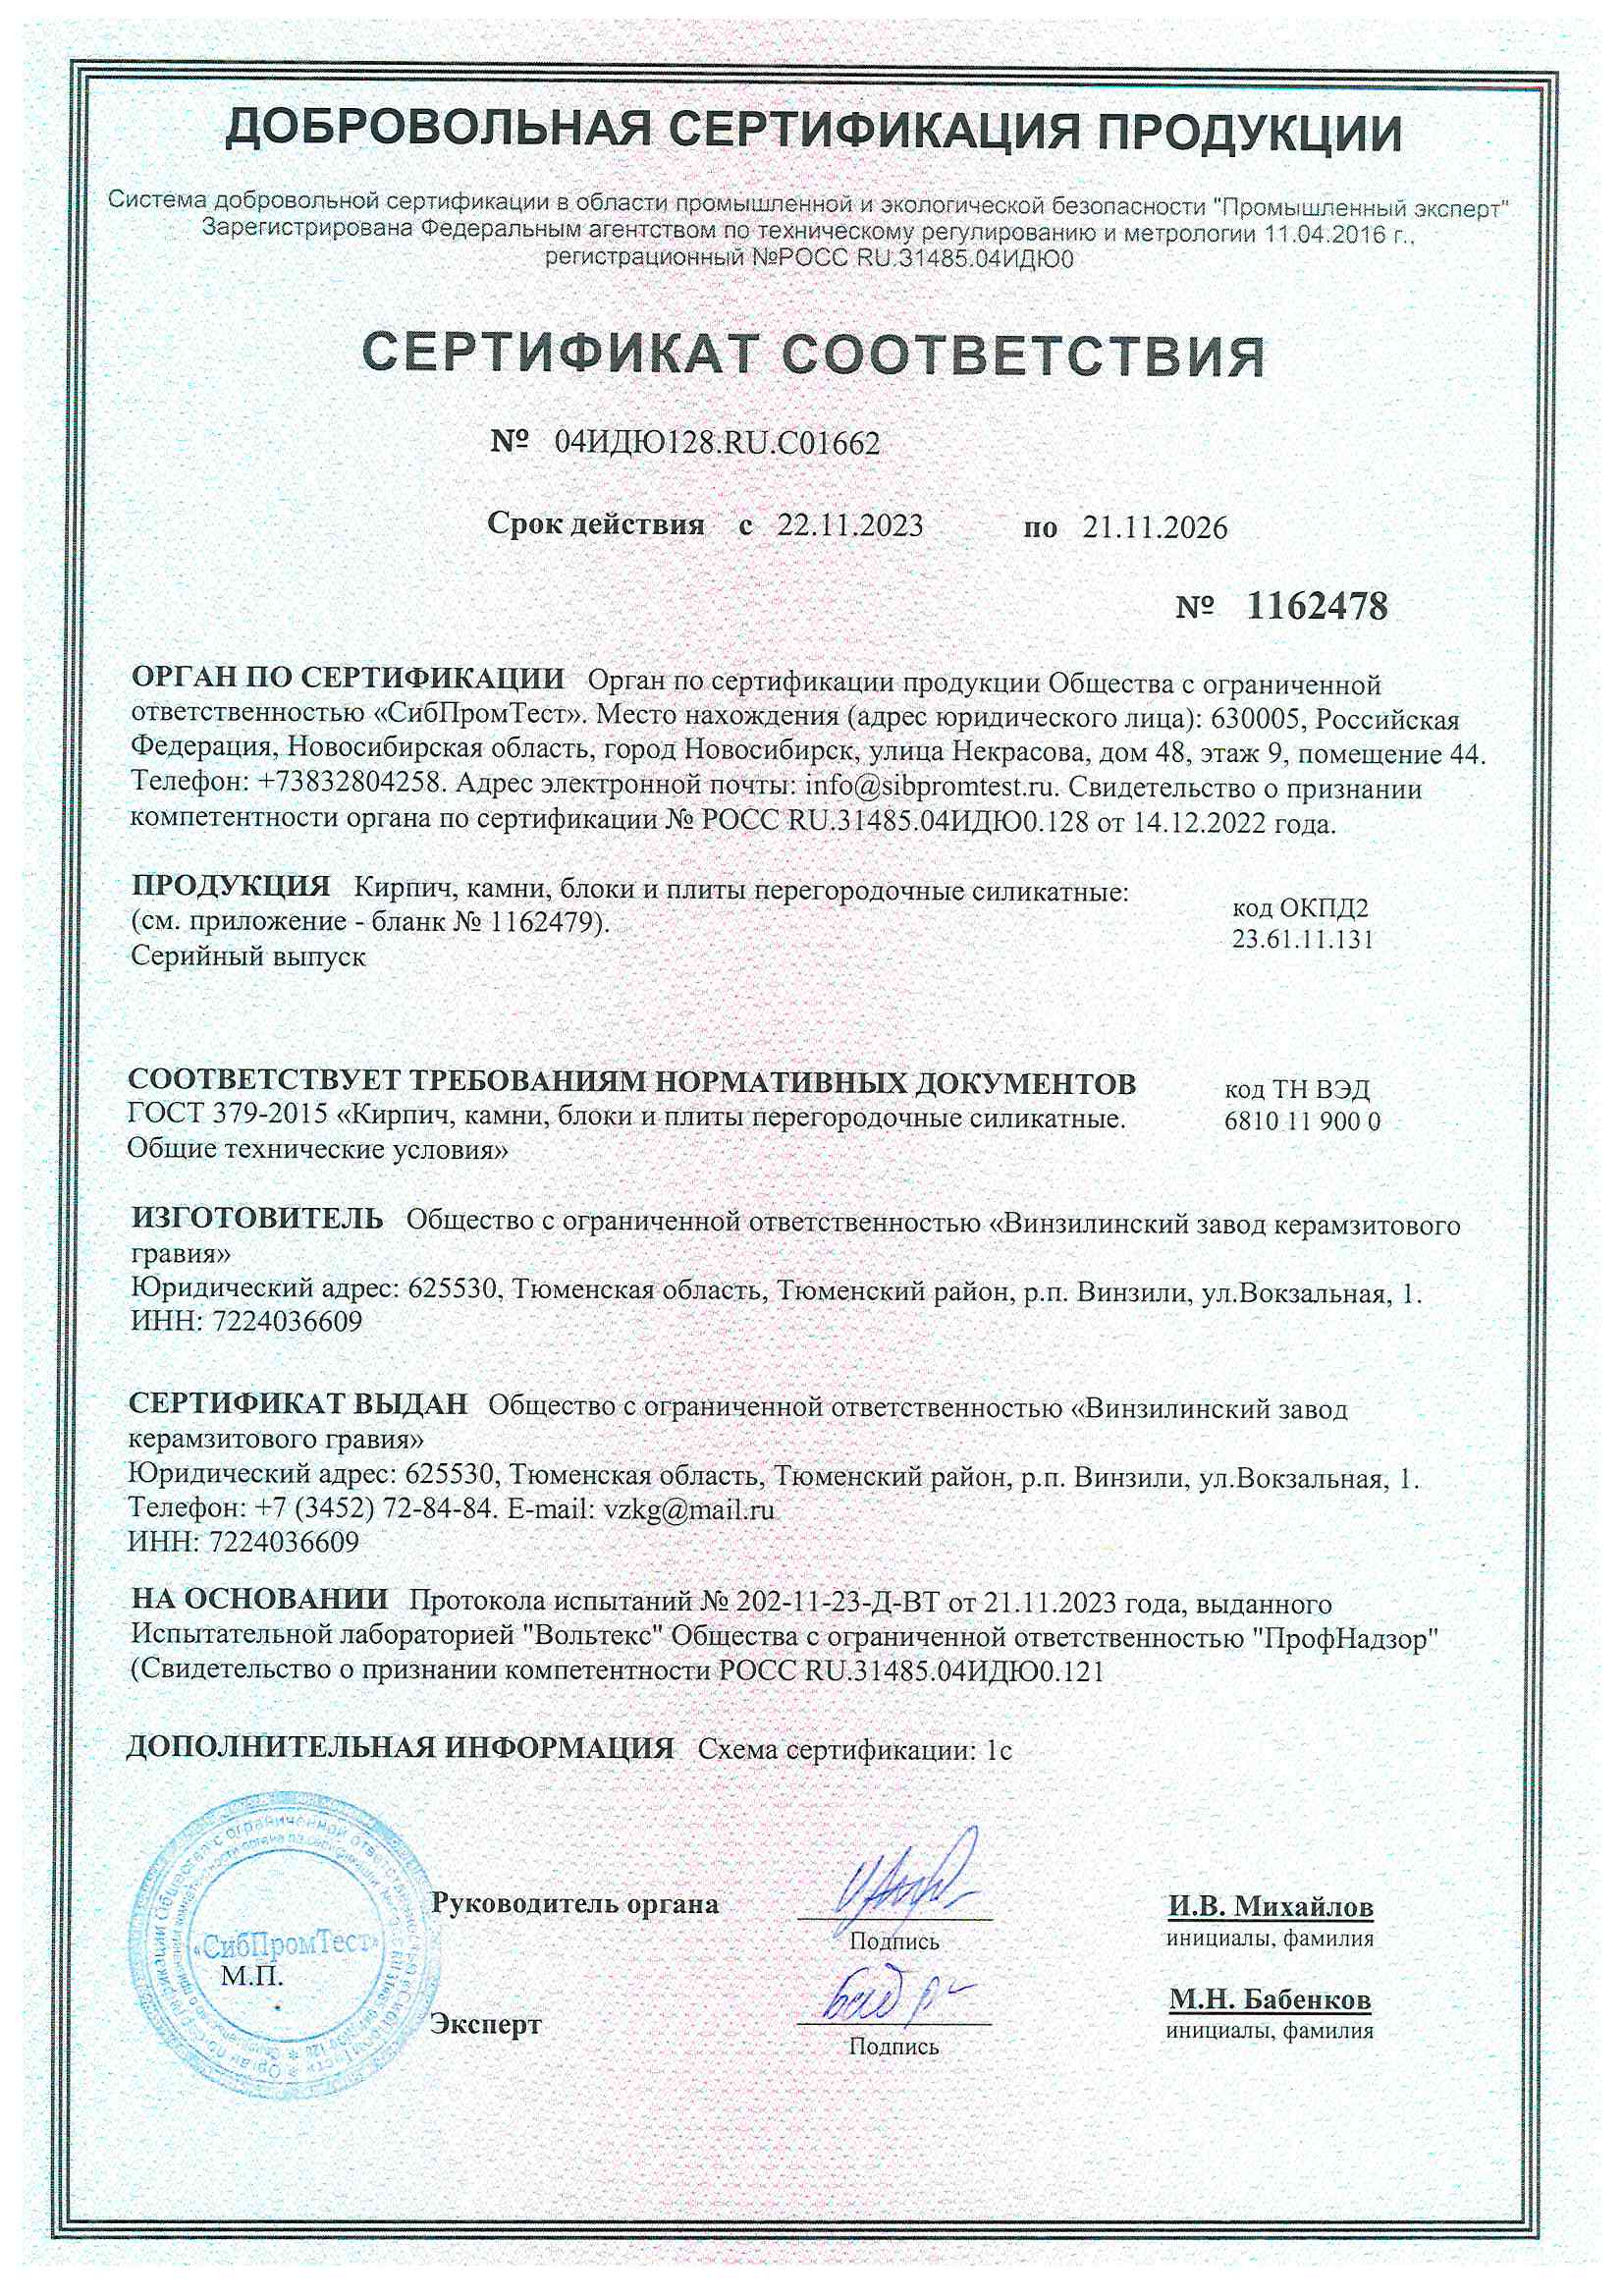 Сертификат ГОСТ 379-2015 кирпич силикатный, блоки 1